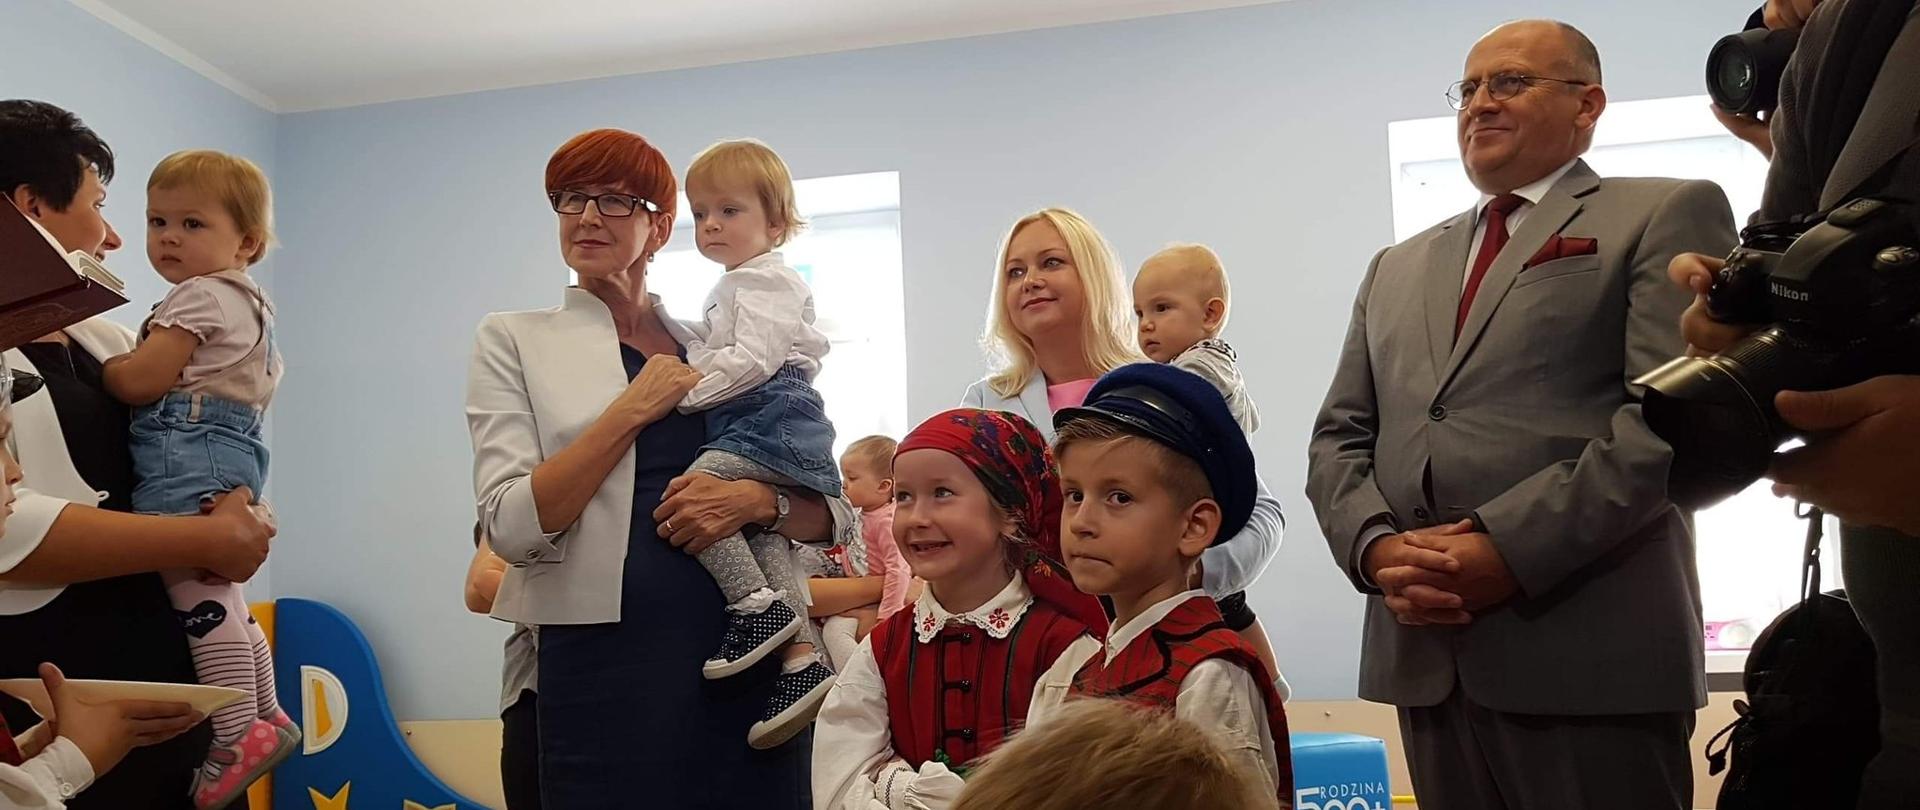 Otwarcie pierwszego żłobka w Łęczycy. Minister Elżbieta Rafalska trzyma na rękach dziewczynkę. Towarzyszy jej wojewoda łódzki, dyrektor żłobka. W tle dzieci, które uczestniczą w wydarzeniu.